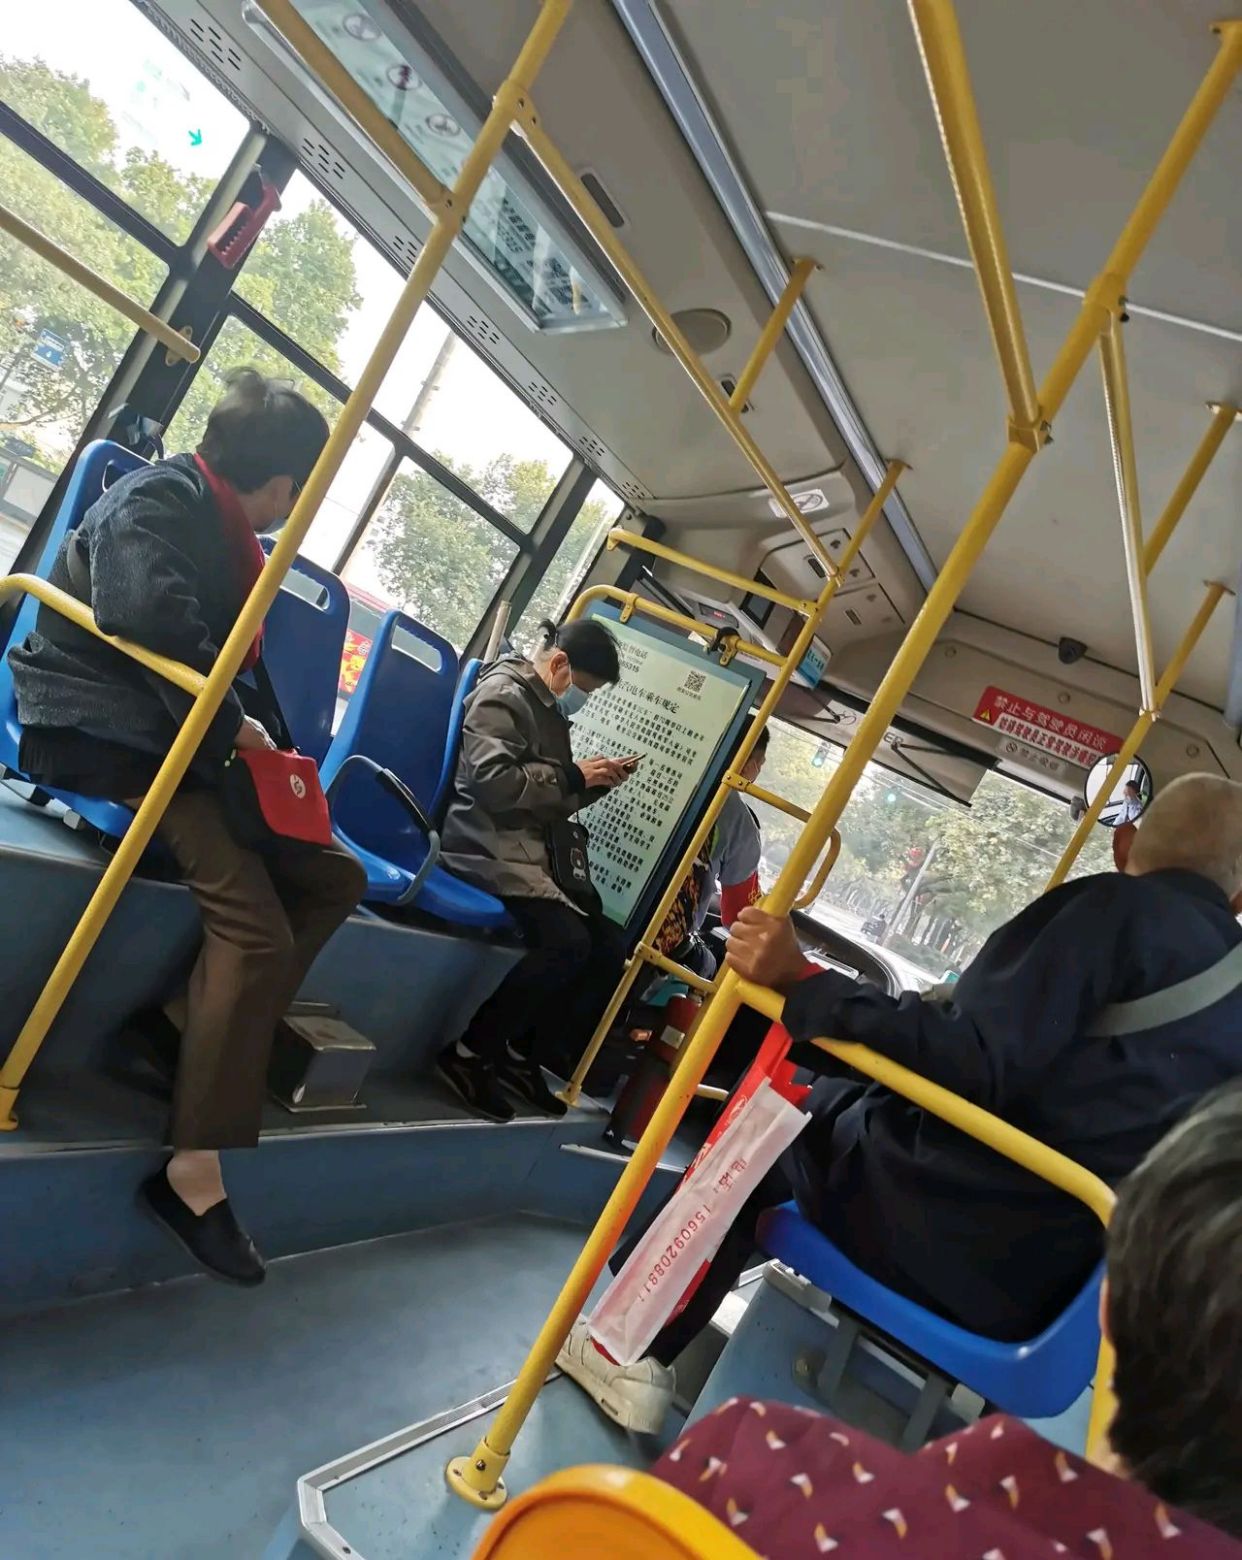 西安公交车上,上来七八个老人整个车厢跟装扩音器一样,你怎么看